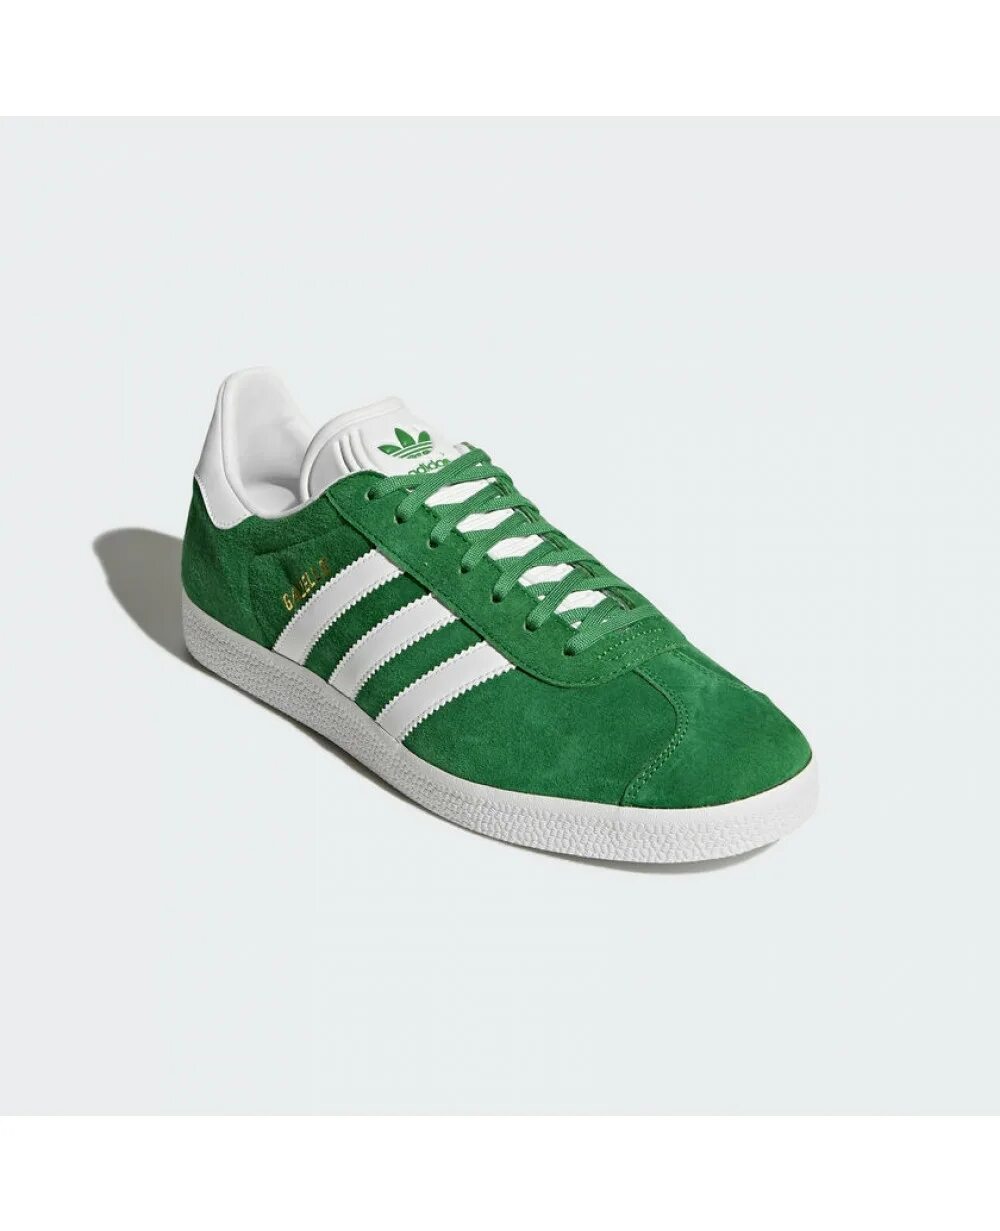 Кроссовки adidas Gazelle Green. Adidas Gazelle зеленые. Adidas Gazelle Green Original. Adidas кеды Gazelle зеленый. Купить зеленый адидас